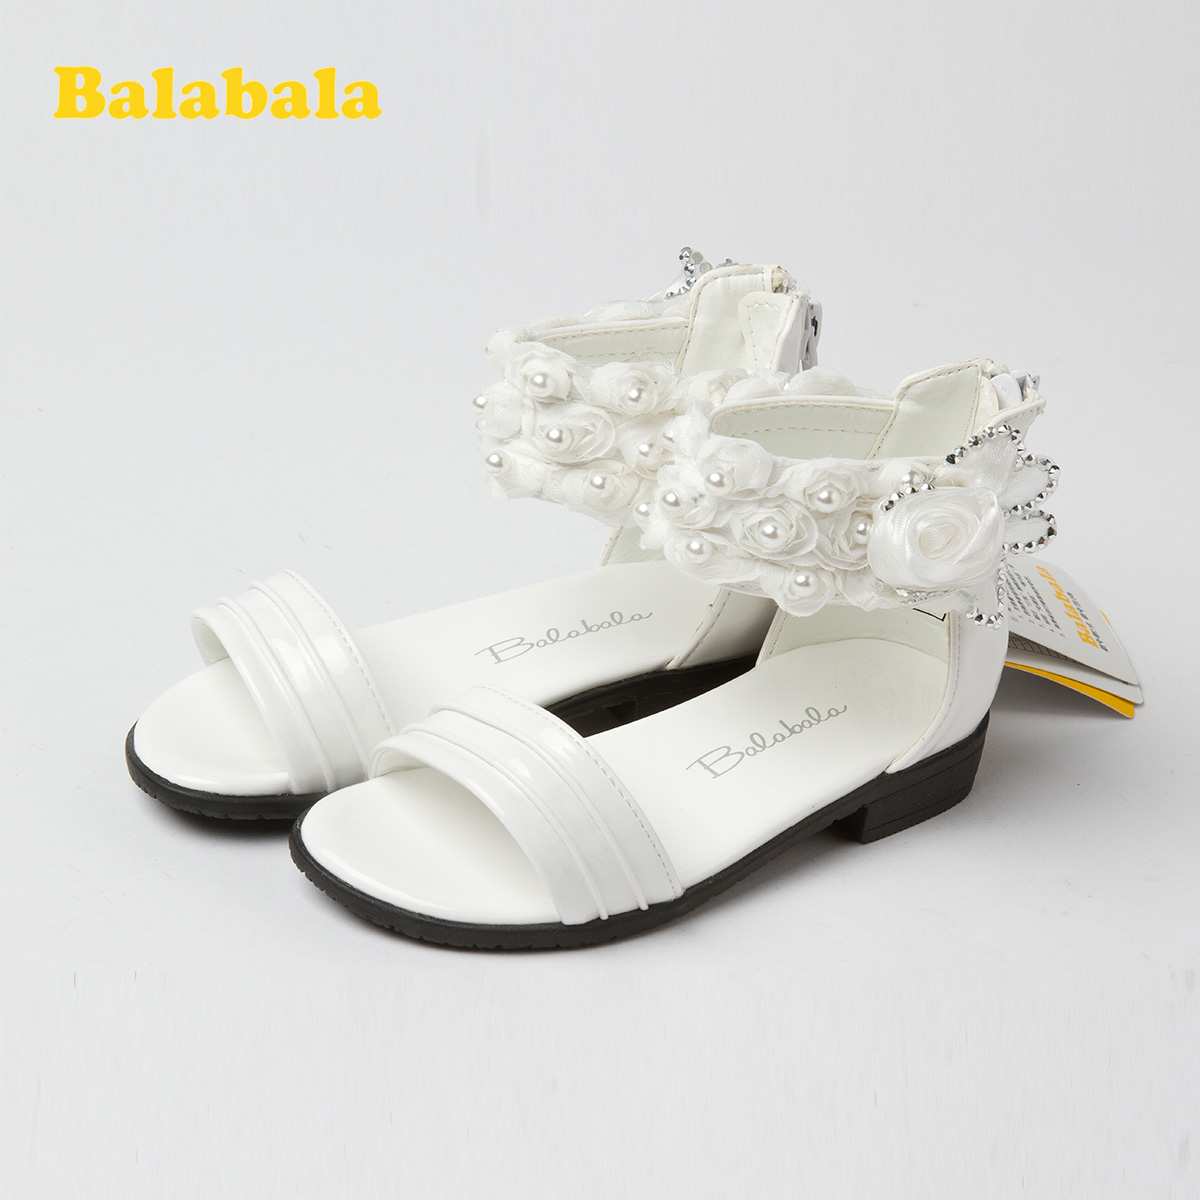 巴拉巴拉童鞋加盟图片